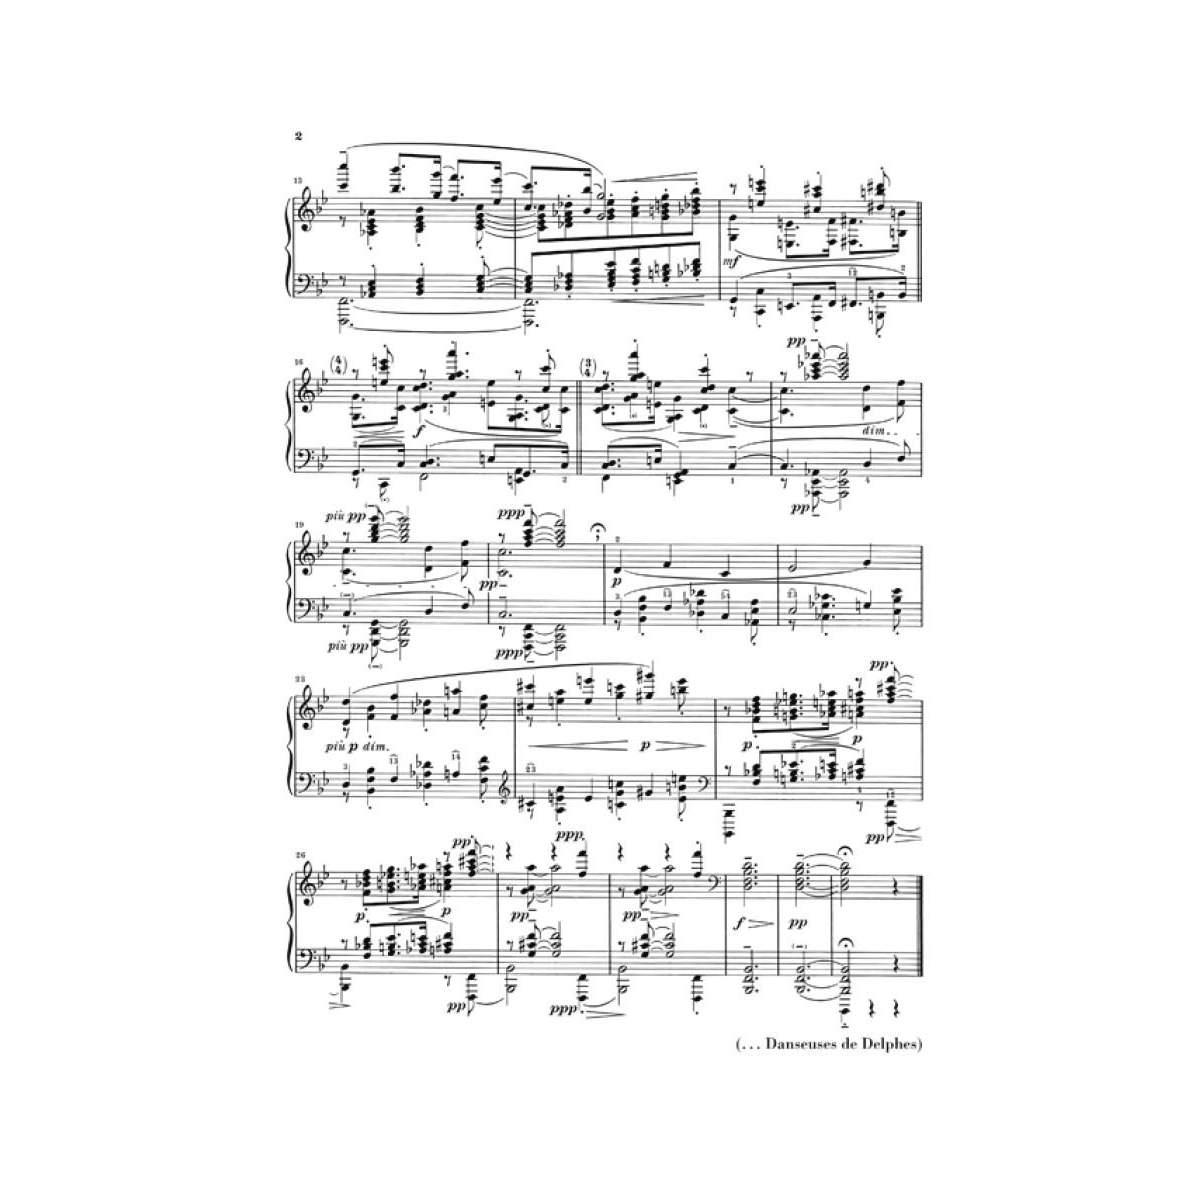 Debussy  Préludes - Premier Livre